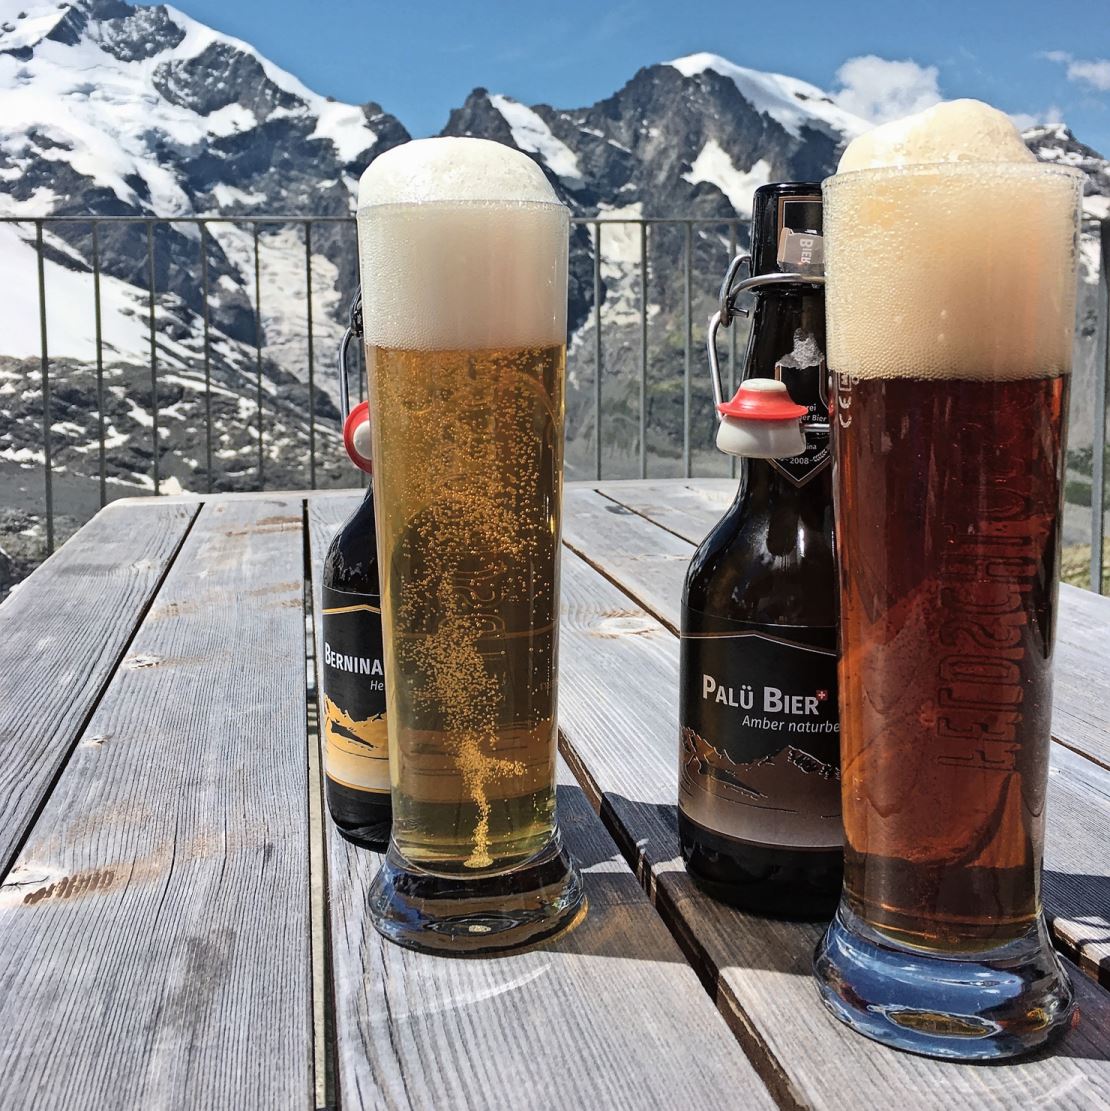 12 Prozent des in der Schweiz konsumierten Biers wird aus Mehrwegflaschen getrunken, 25 Prozent aus Einwegflaschen und 41 Prozent aus Dosen.